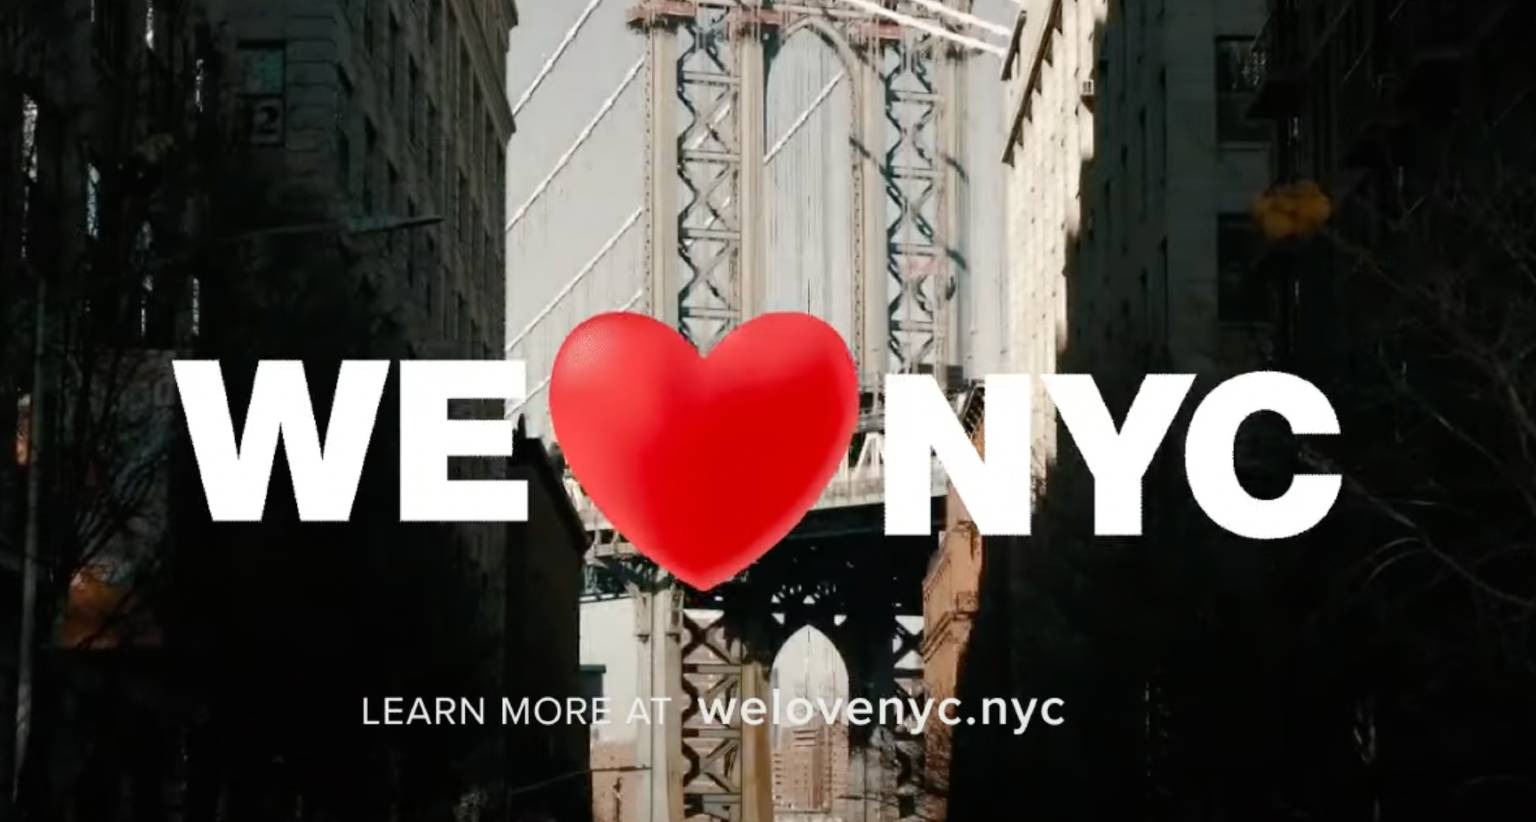 Nueva York actualiza su marca y se orienta hacia lo colectivo con “We love NYC” buscando la reactivación de la ciudad